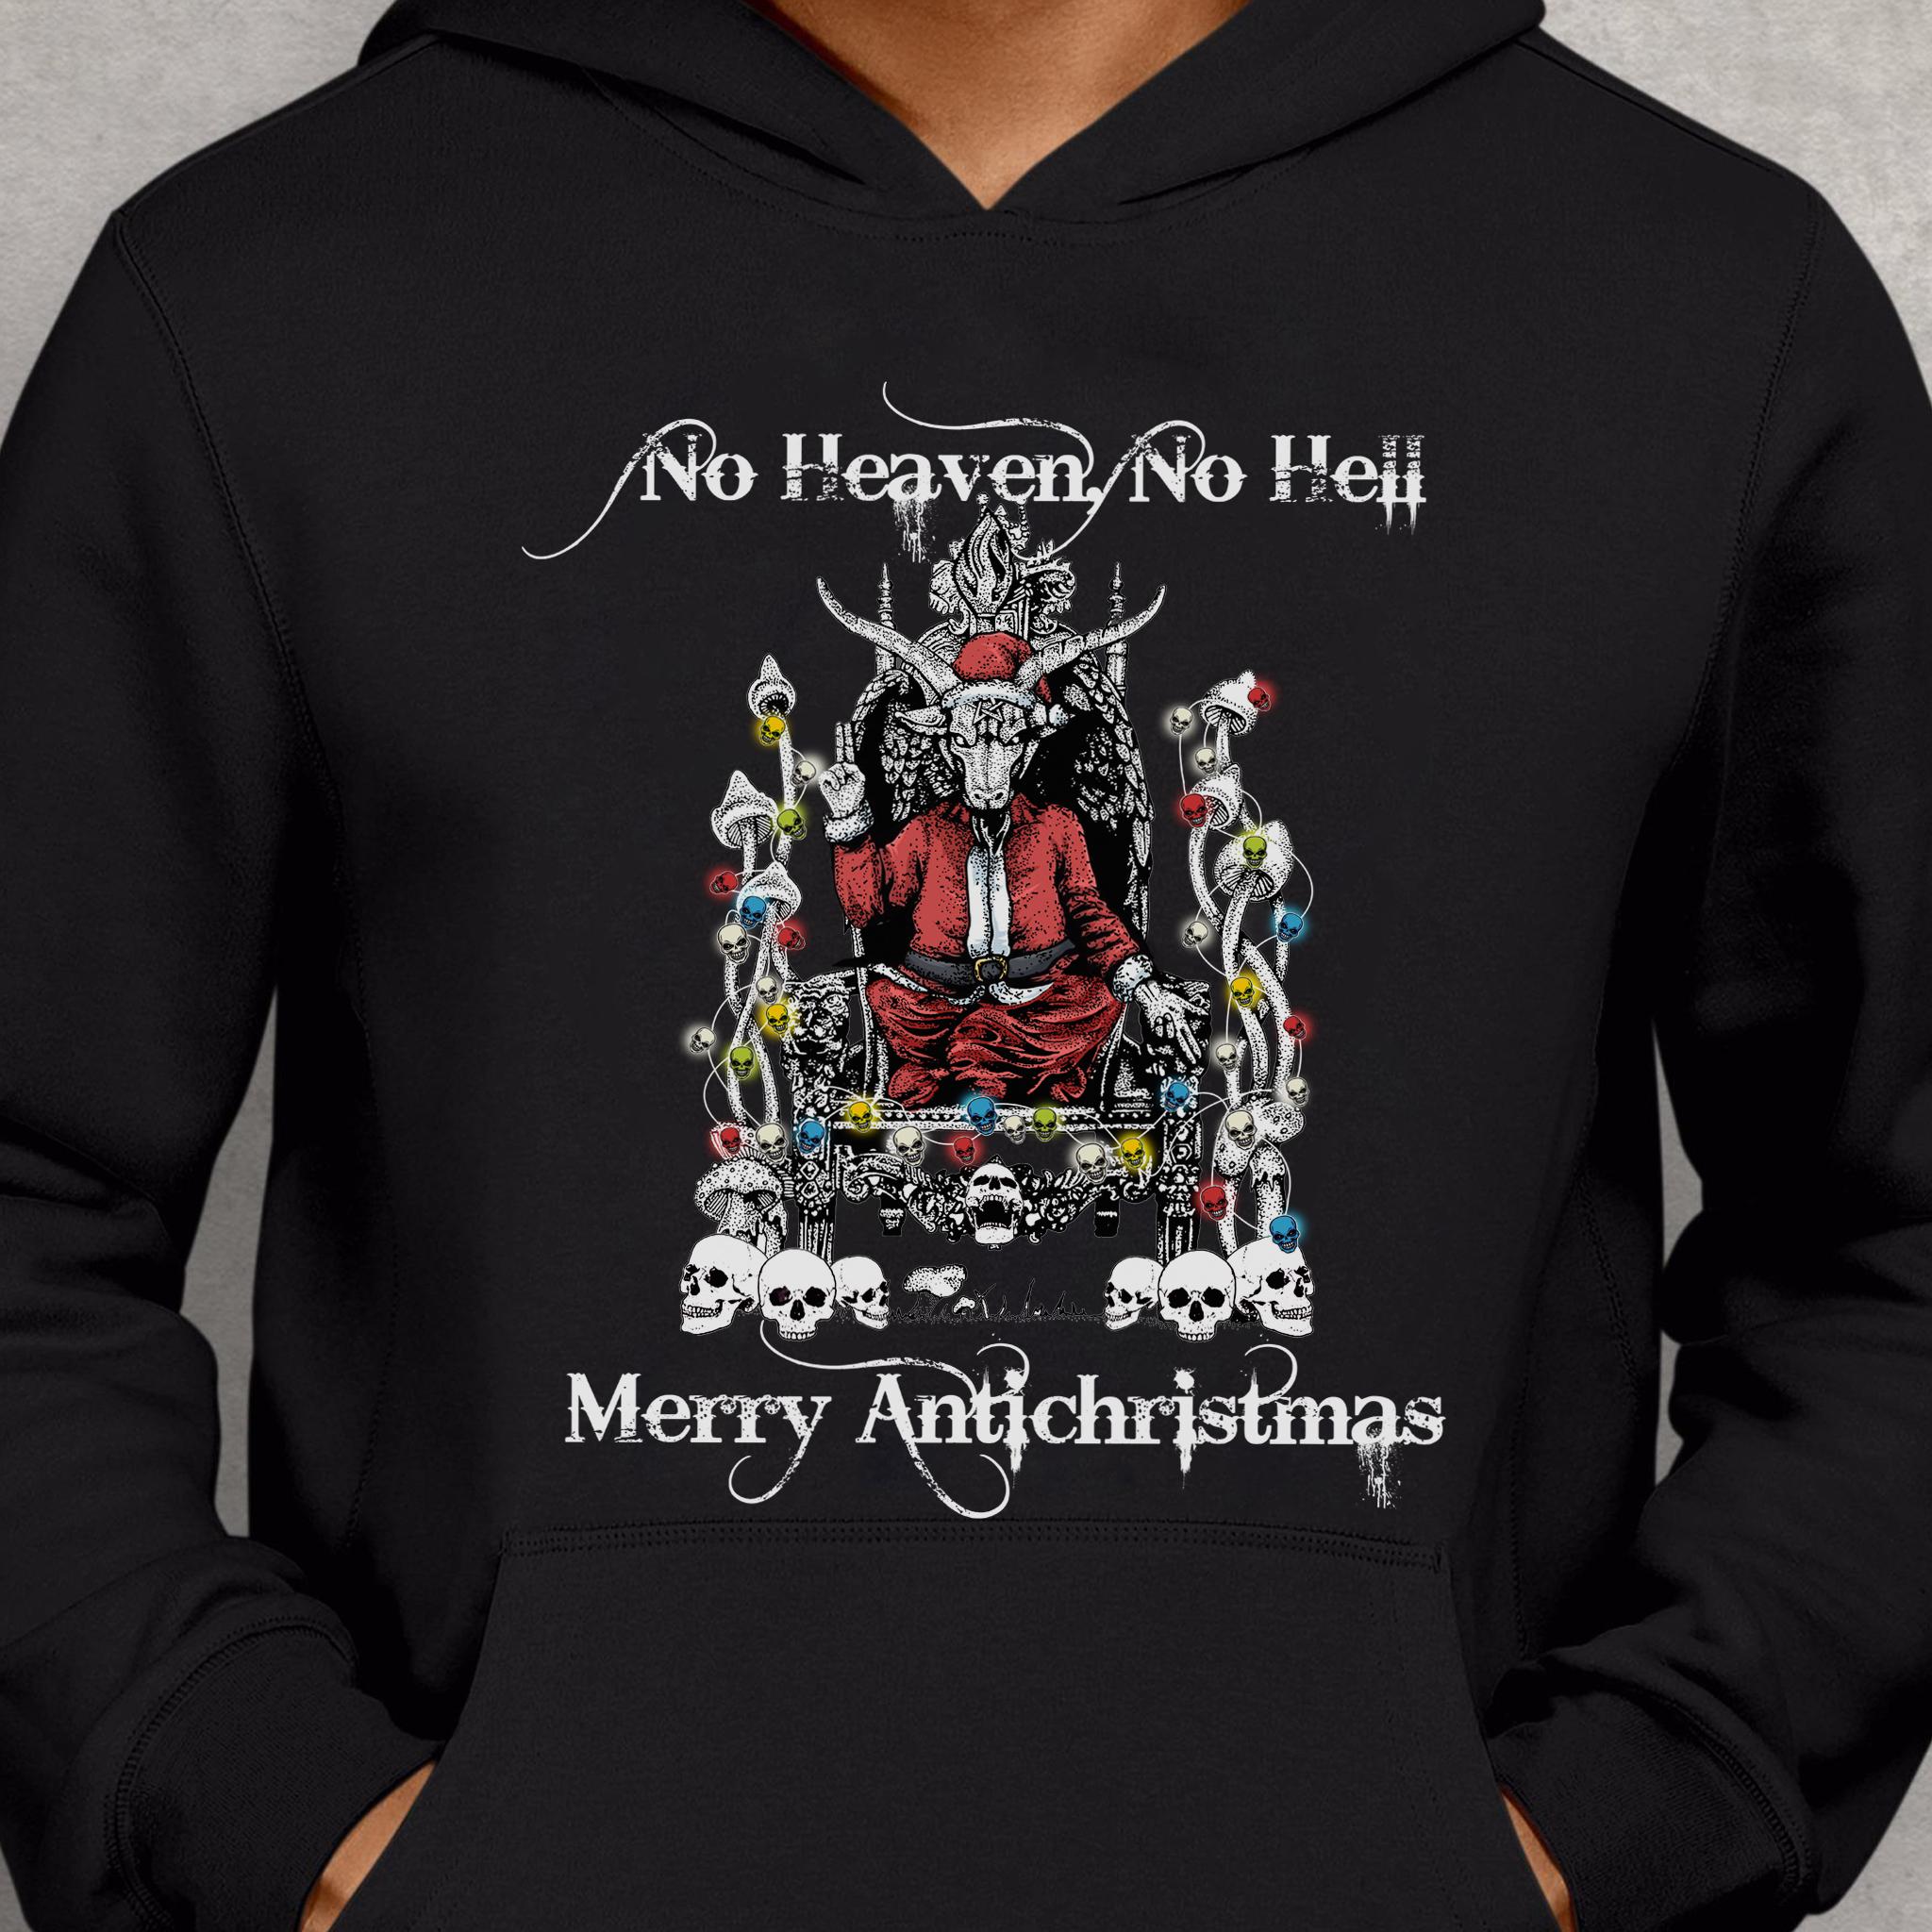 Santa Goat, Santa Claus Christmas Shirt - No heaven no hell merry antichristmas